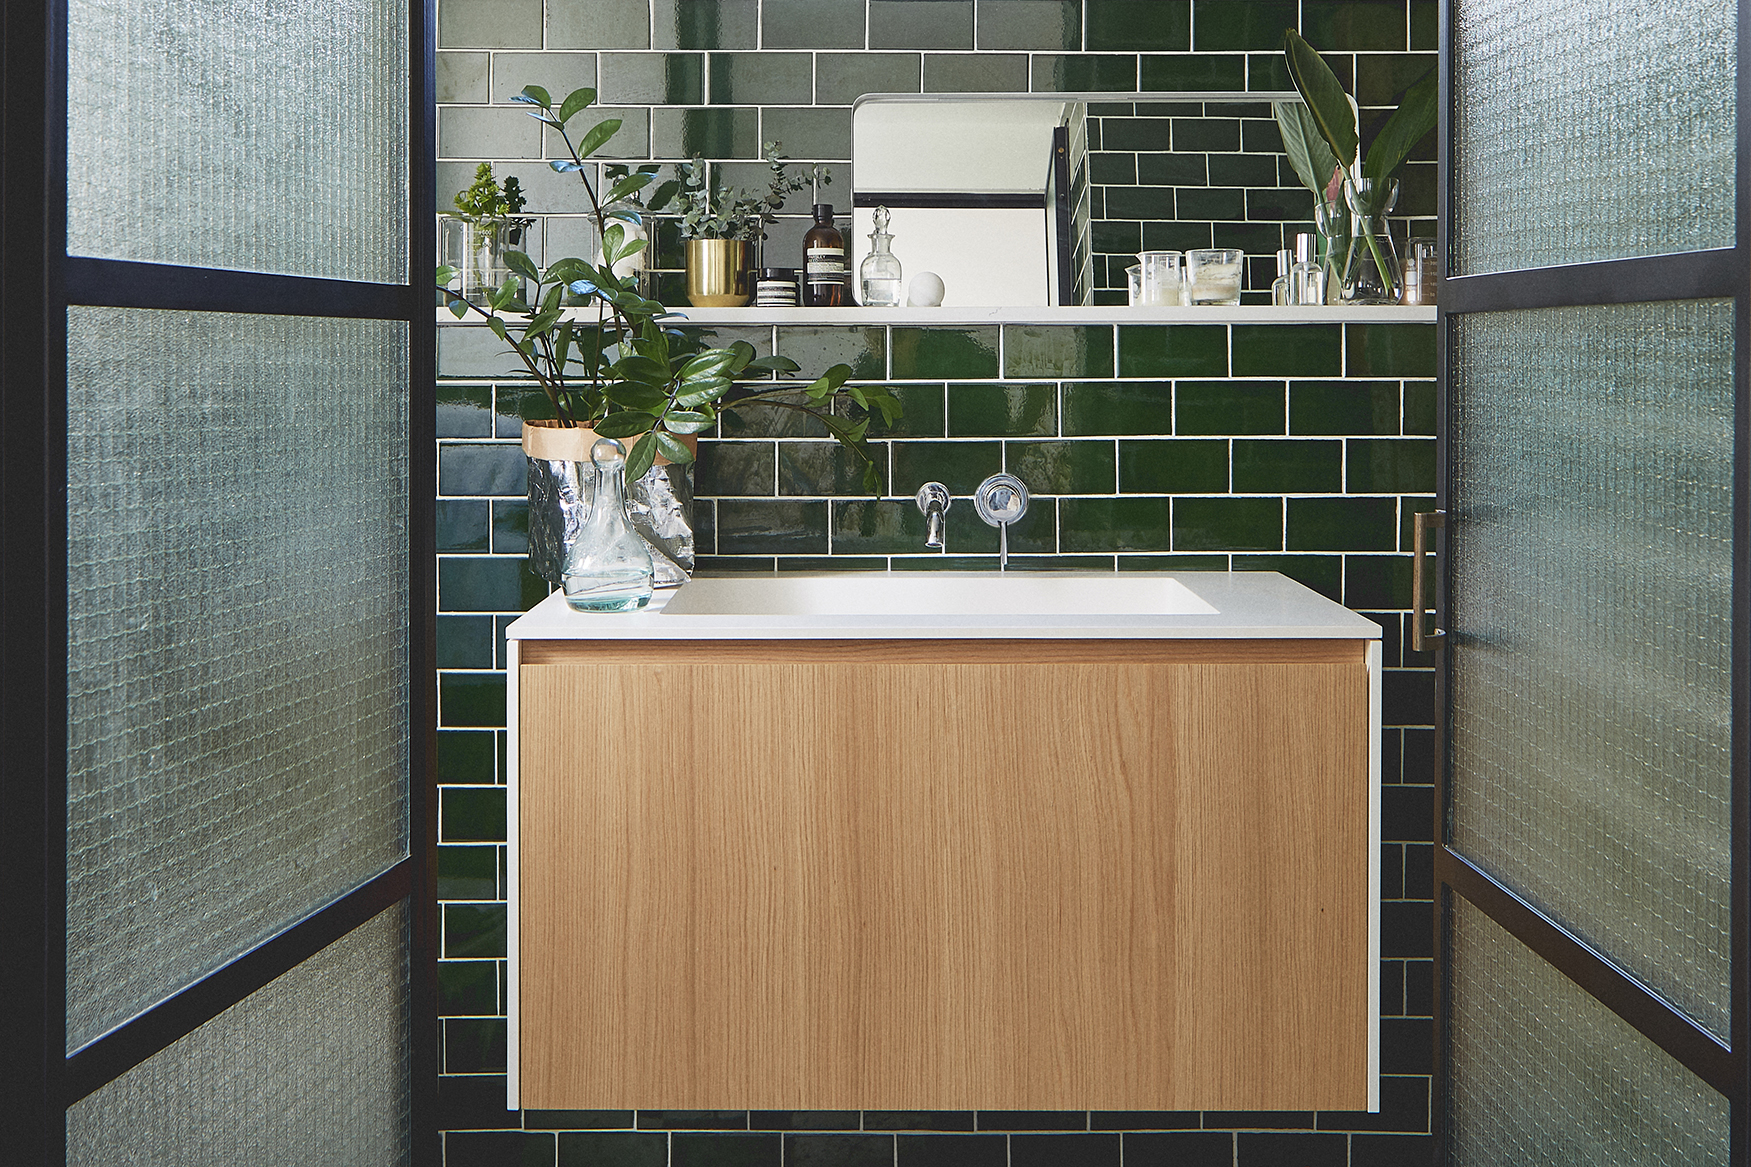 Steel frame doors bathroom emerald green tiles plants and cosmetics corian sink